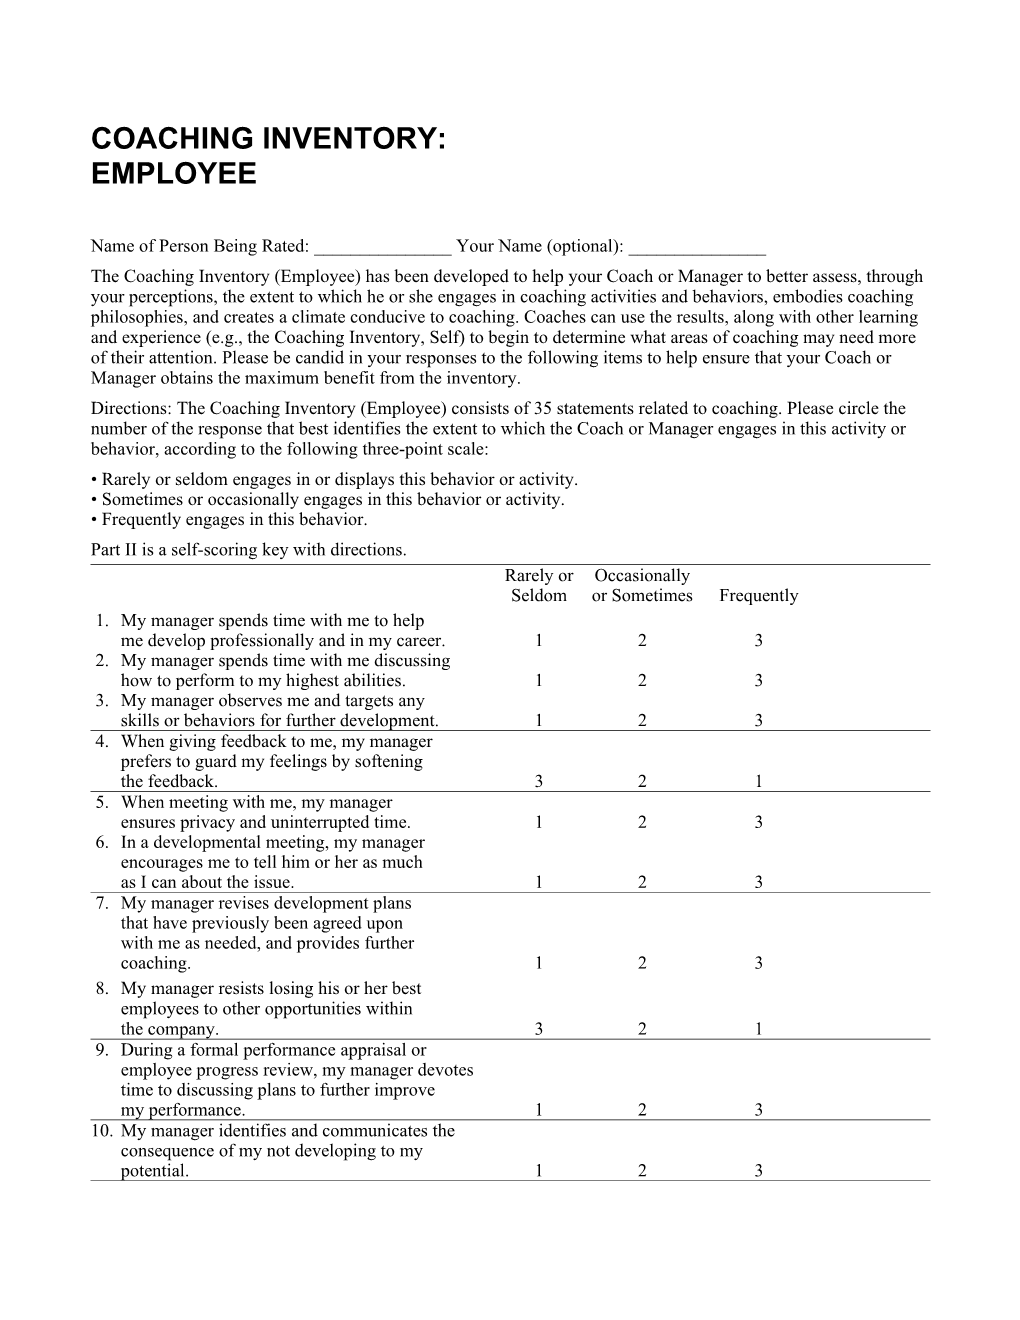 Coaching Inventory: Employee